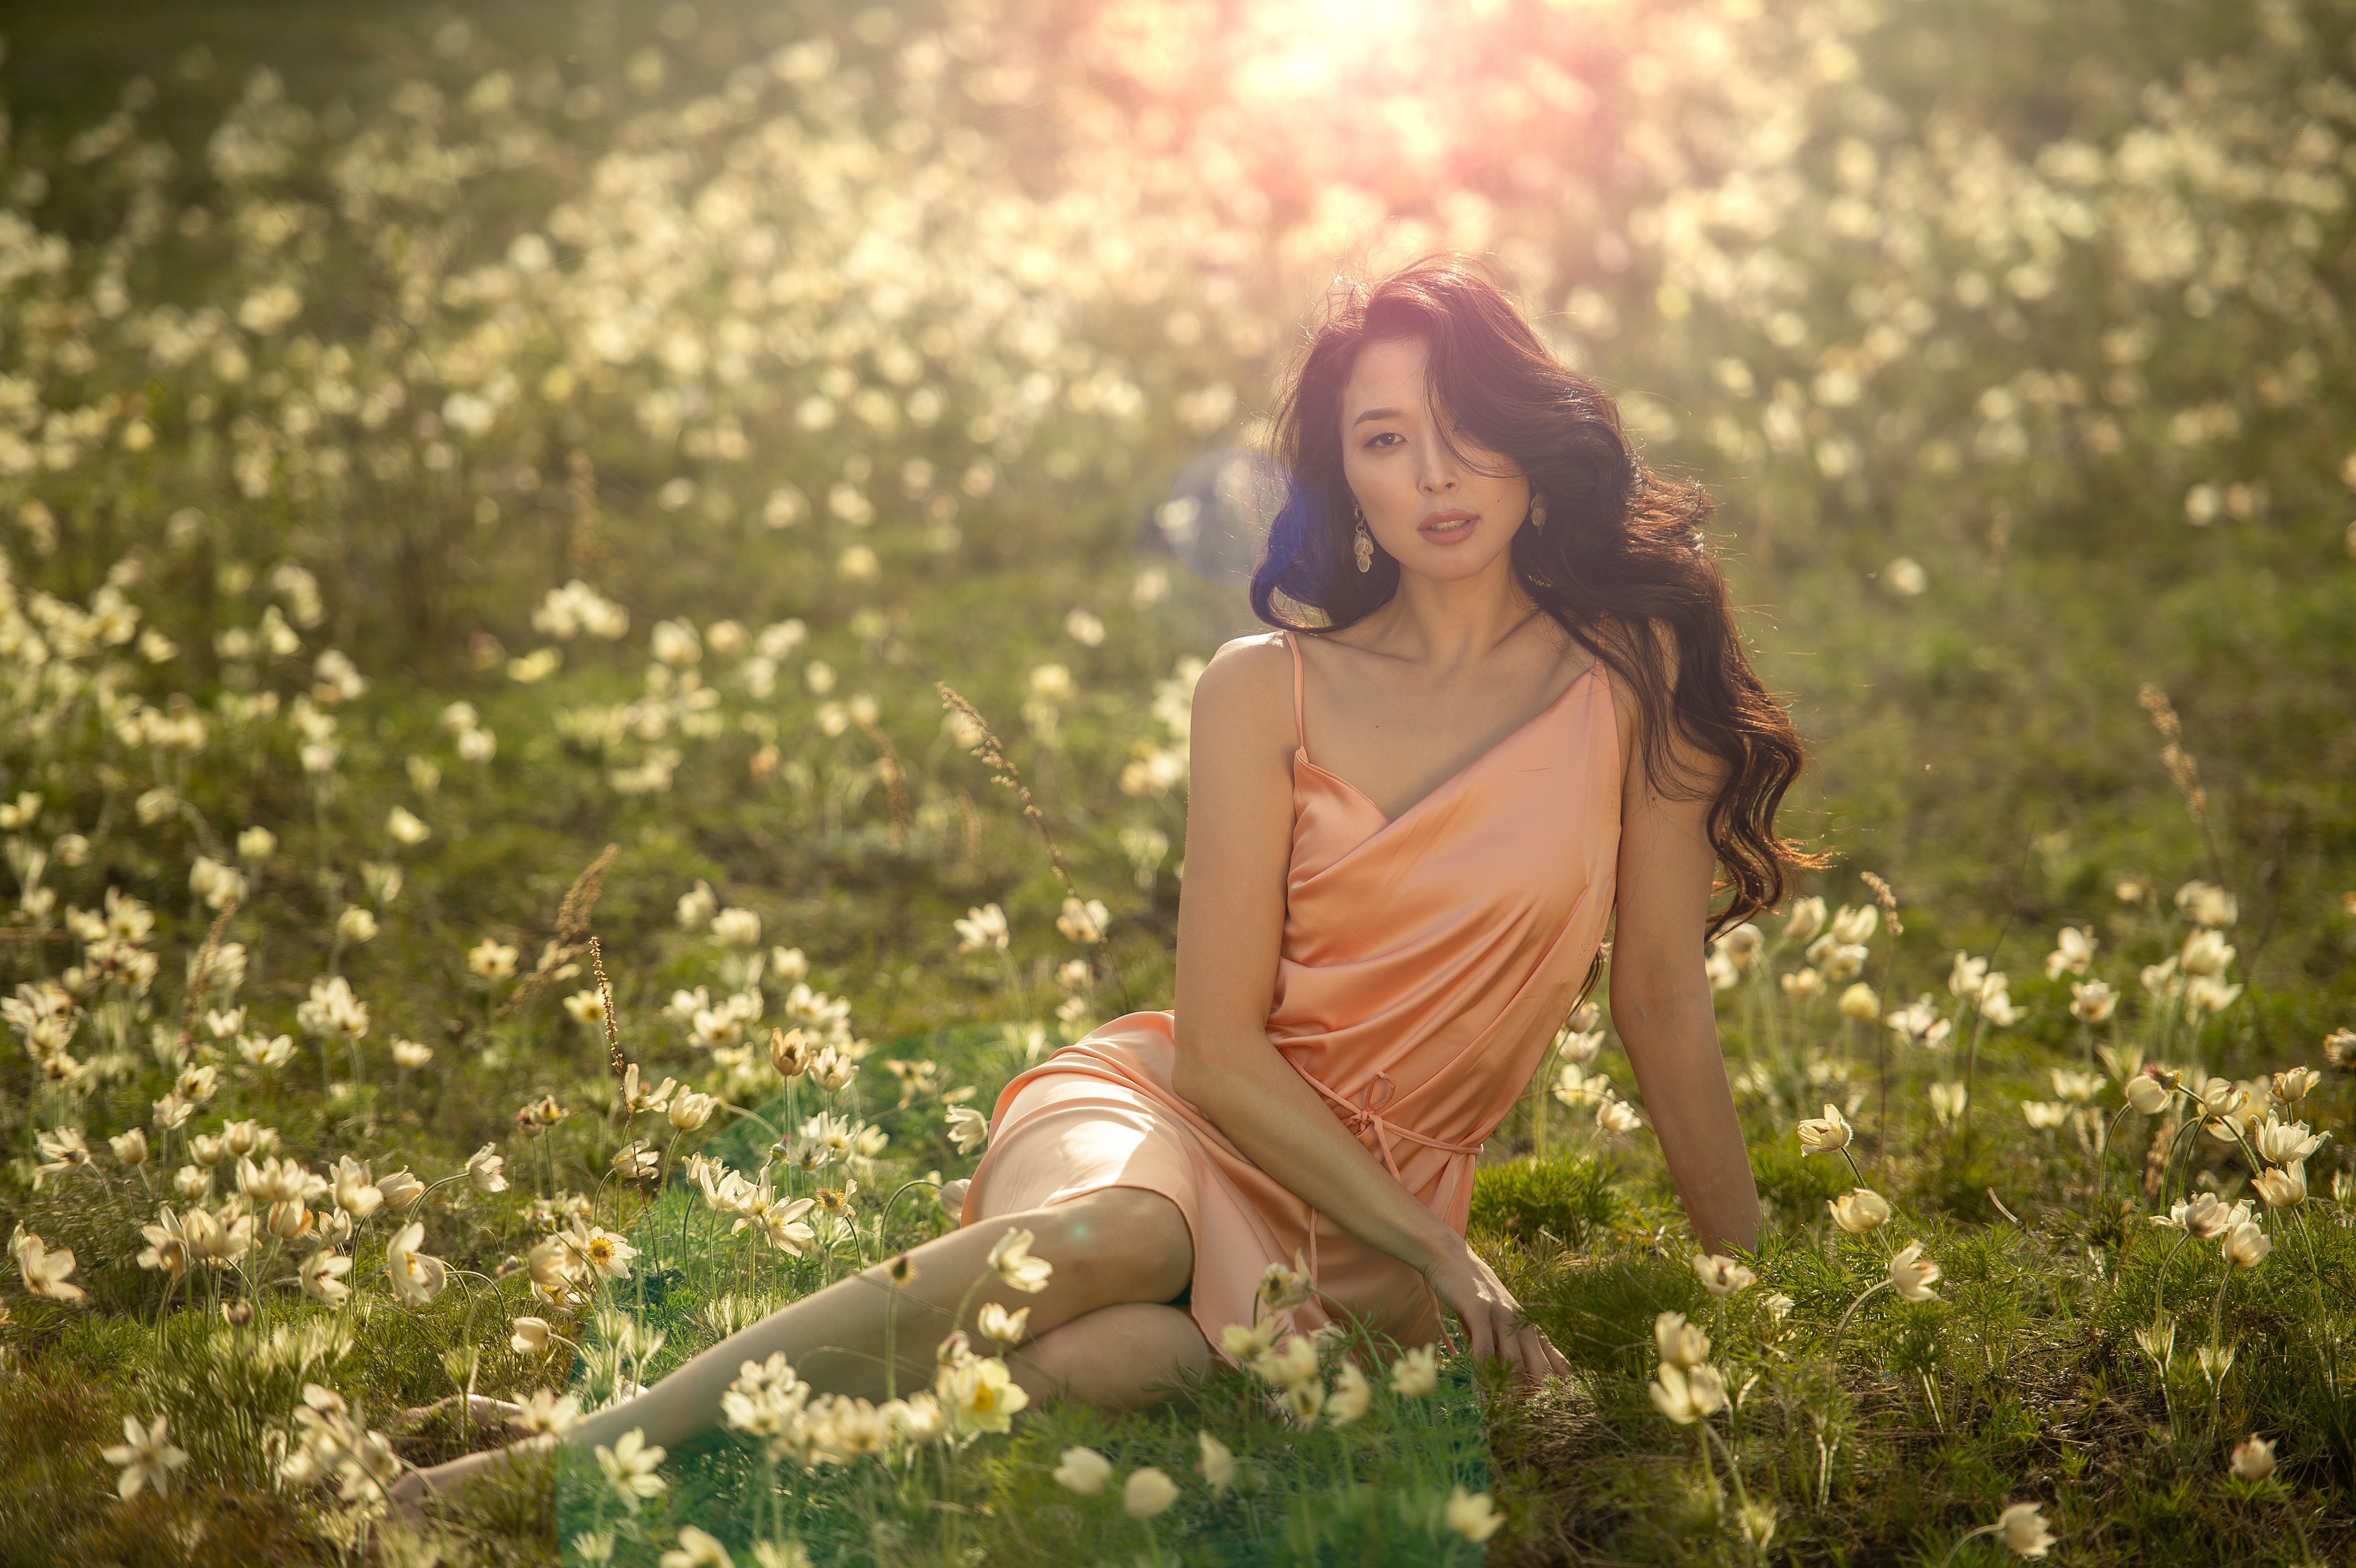 Asian Model Women Long Hair Brunette Sitting Dress Grass Flowers Field Earring Depth Of Field Barefo 4928x3280